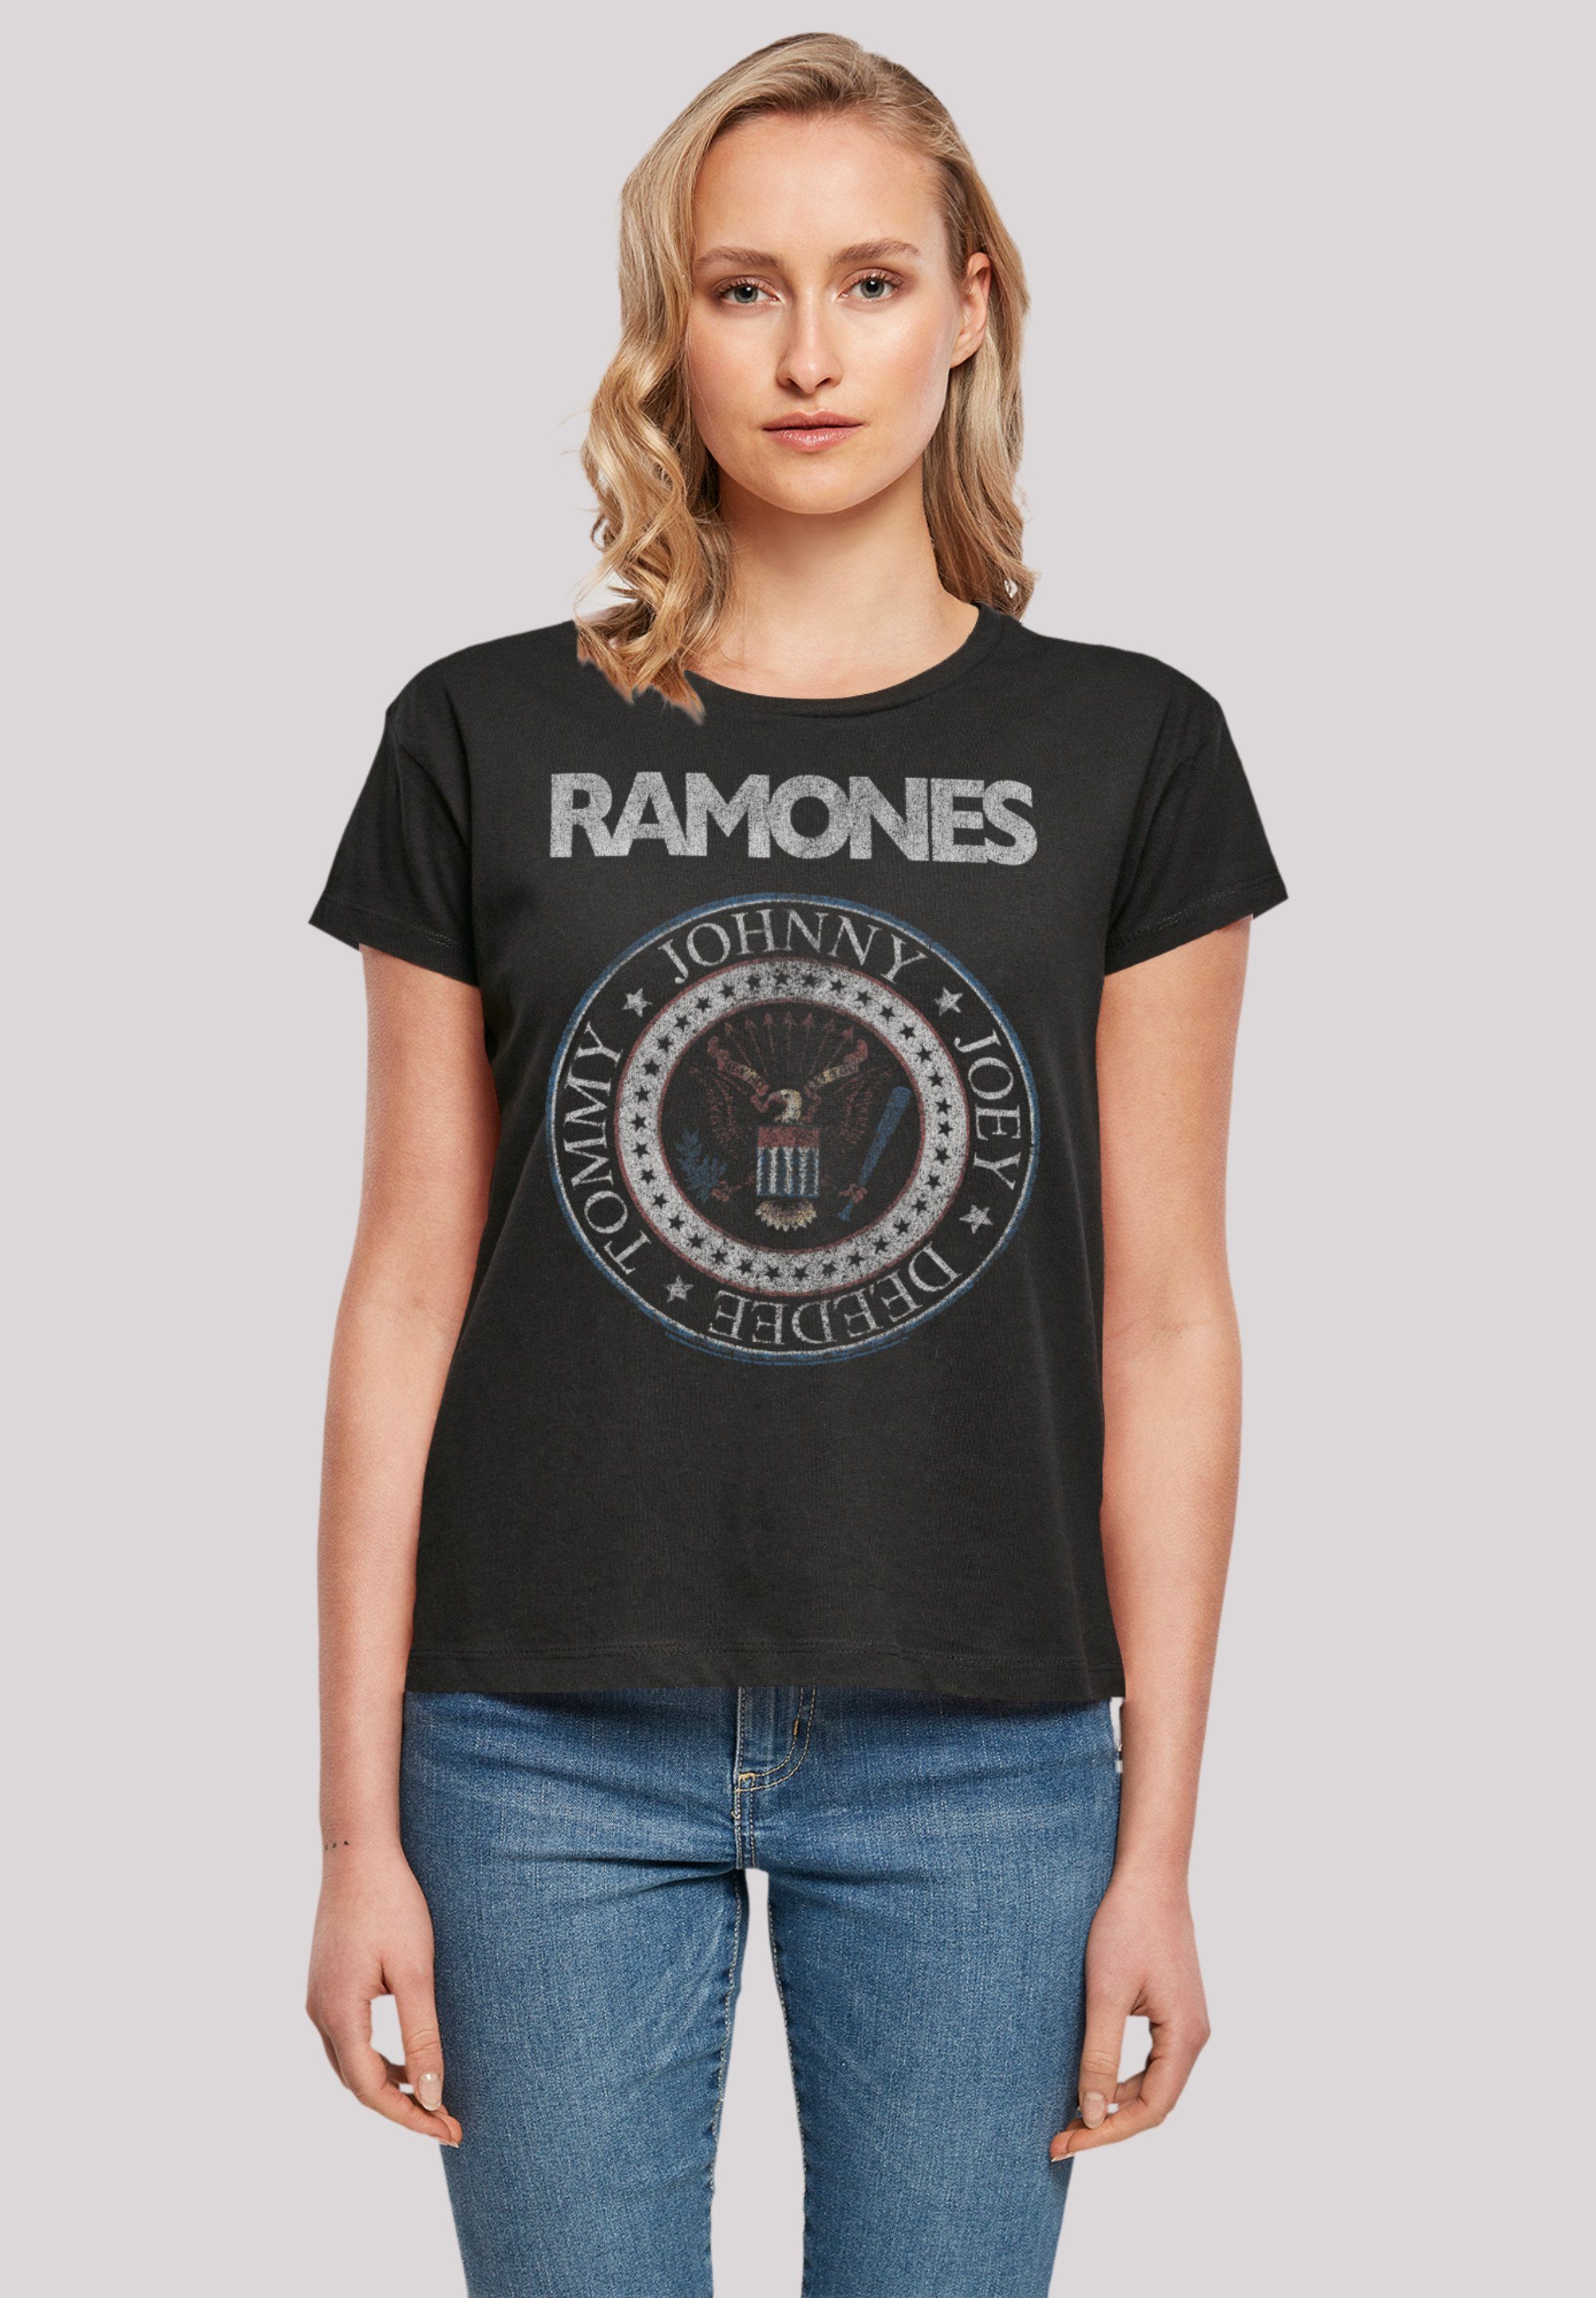 Red hochwertige Passform Rock-Musik, And Seal White Band Ramones Rock T-Shirt Band, F4NT4STIC Verarbeitung und Musik Premium Qualität, Perfekte